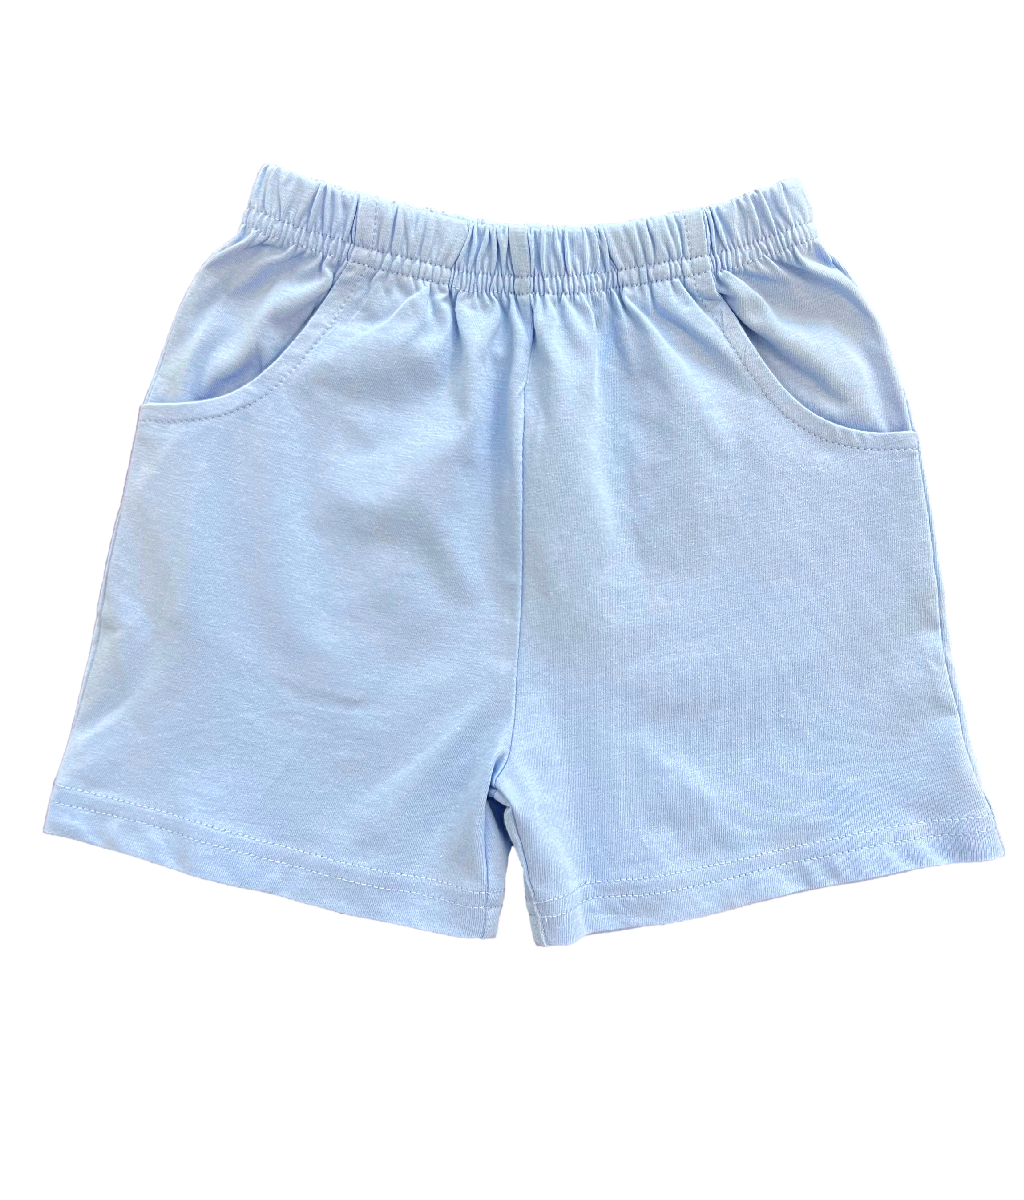 Light Blue Knit Shorts w/ Pockets